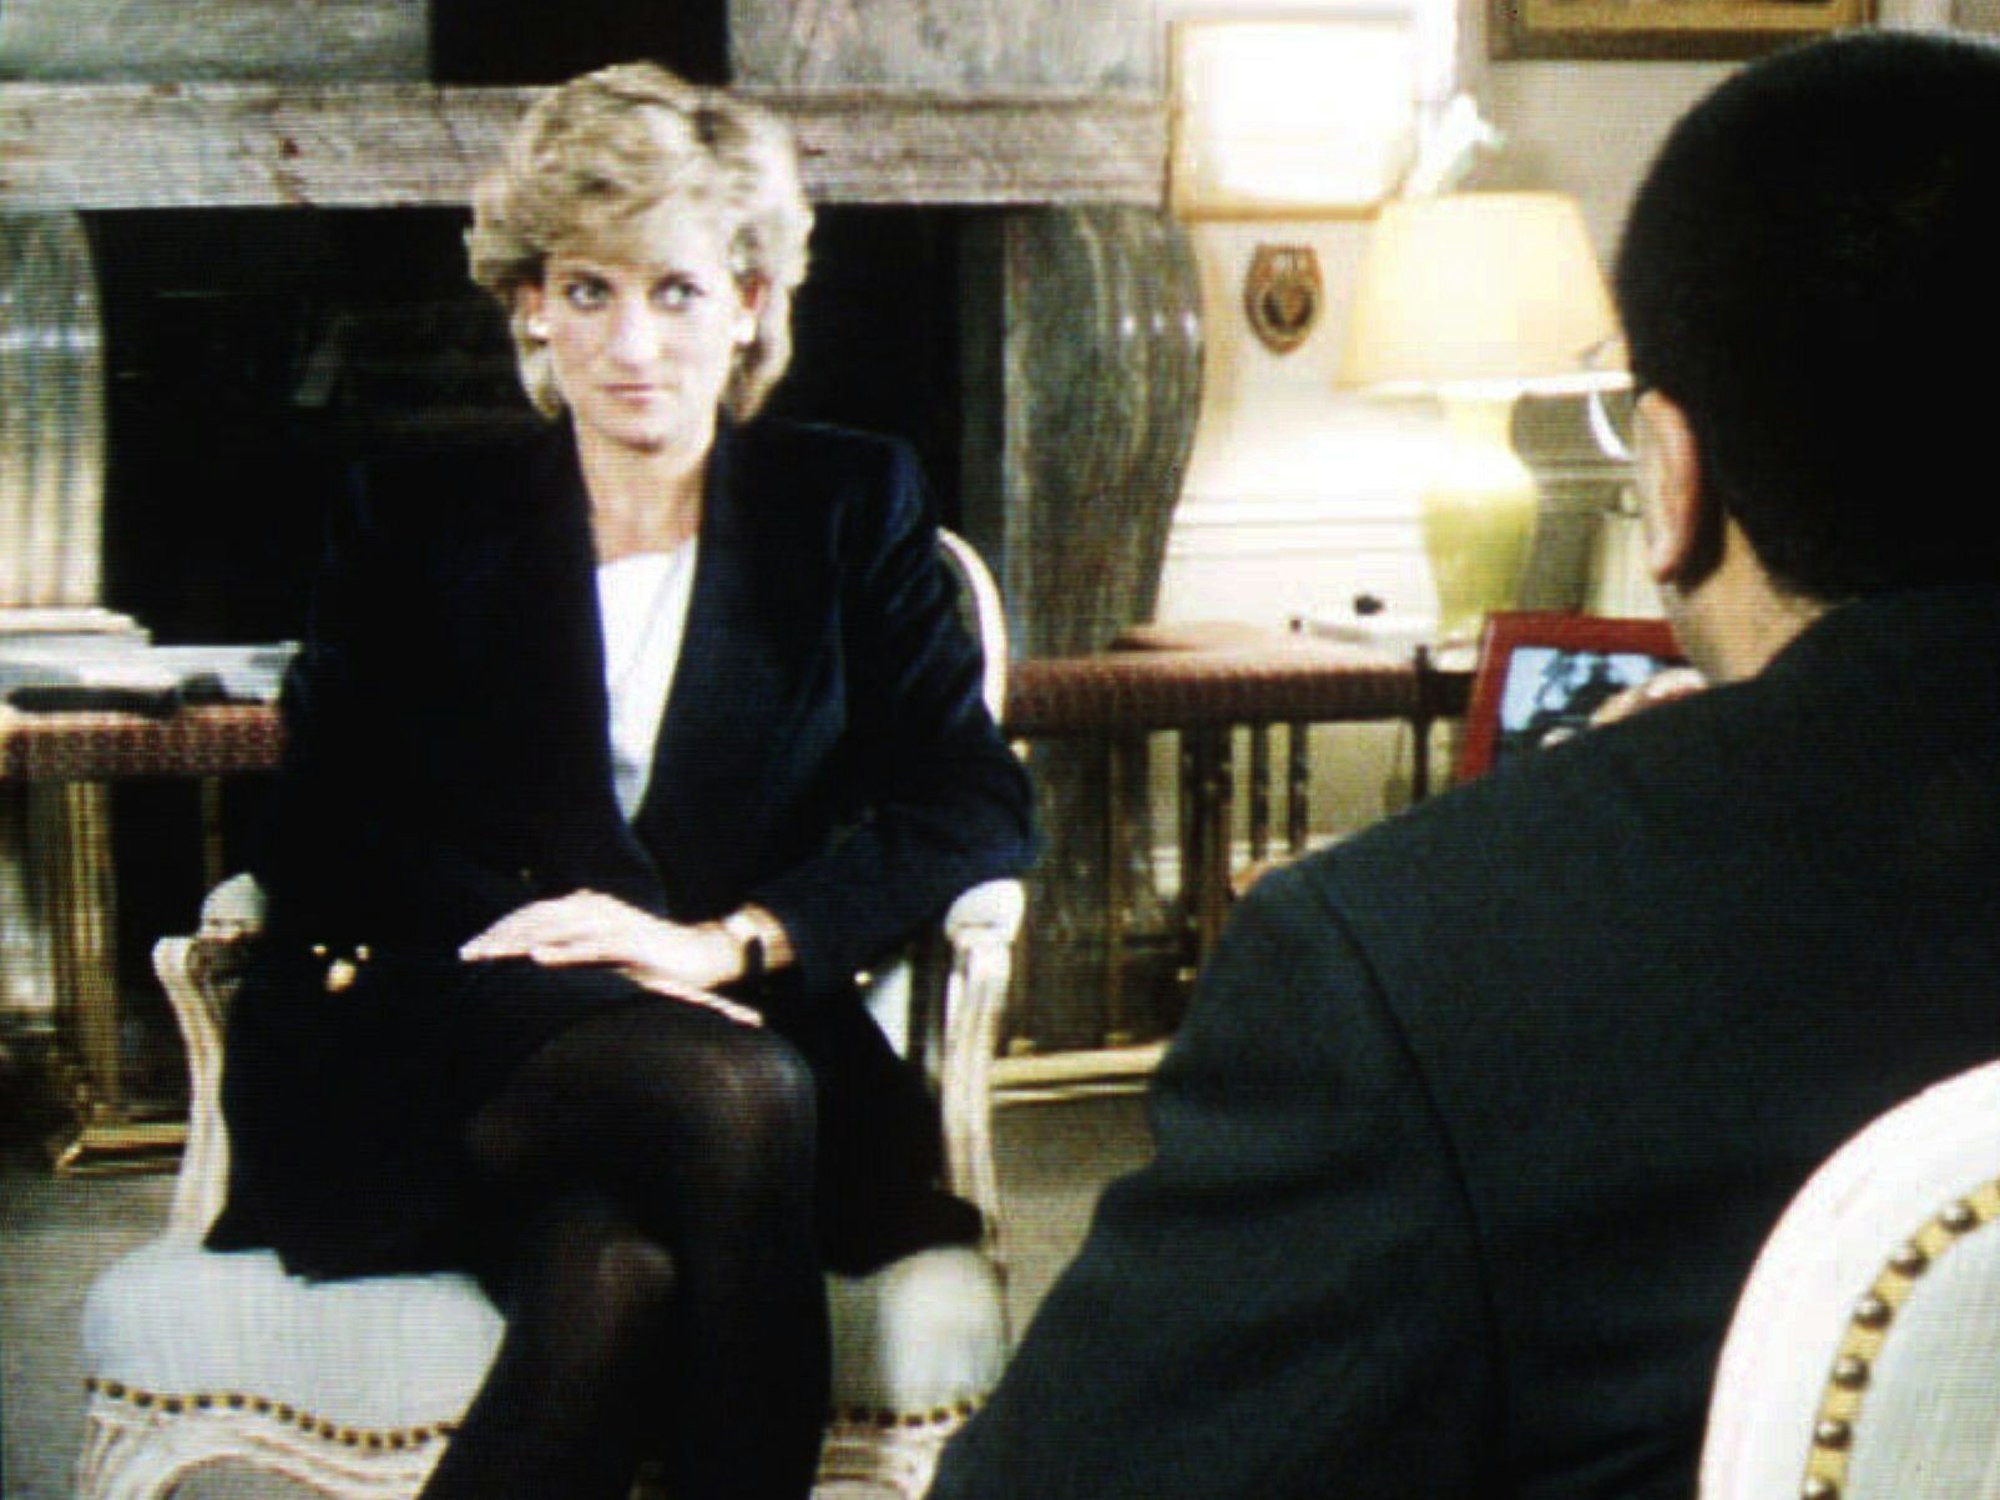 BBC-Interview von Prinzessin Diana, geführt durch Martin Bashir, am 20. November 1995.